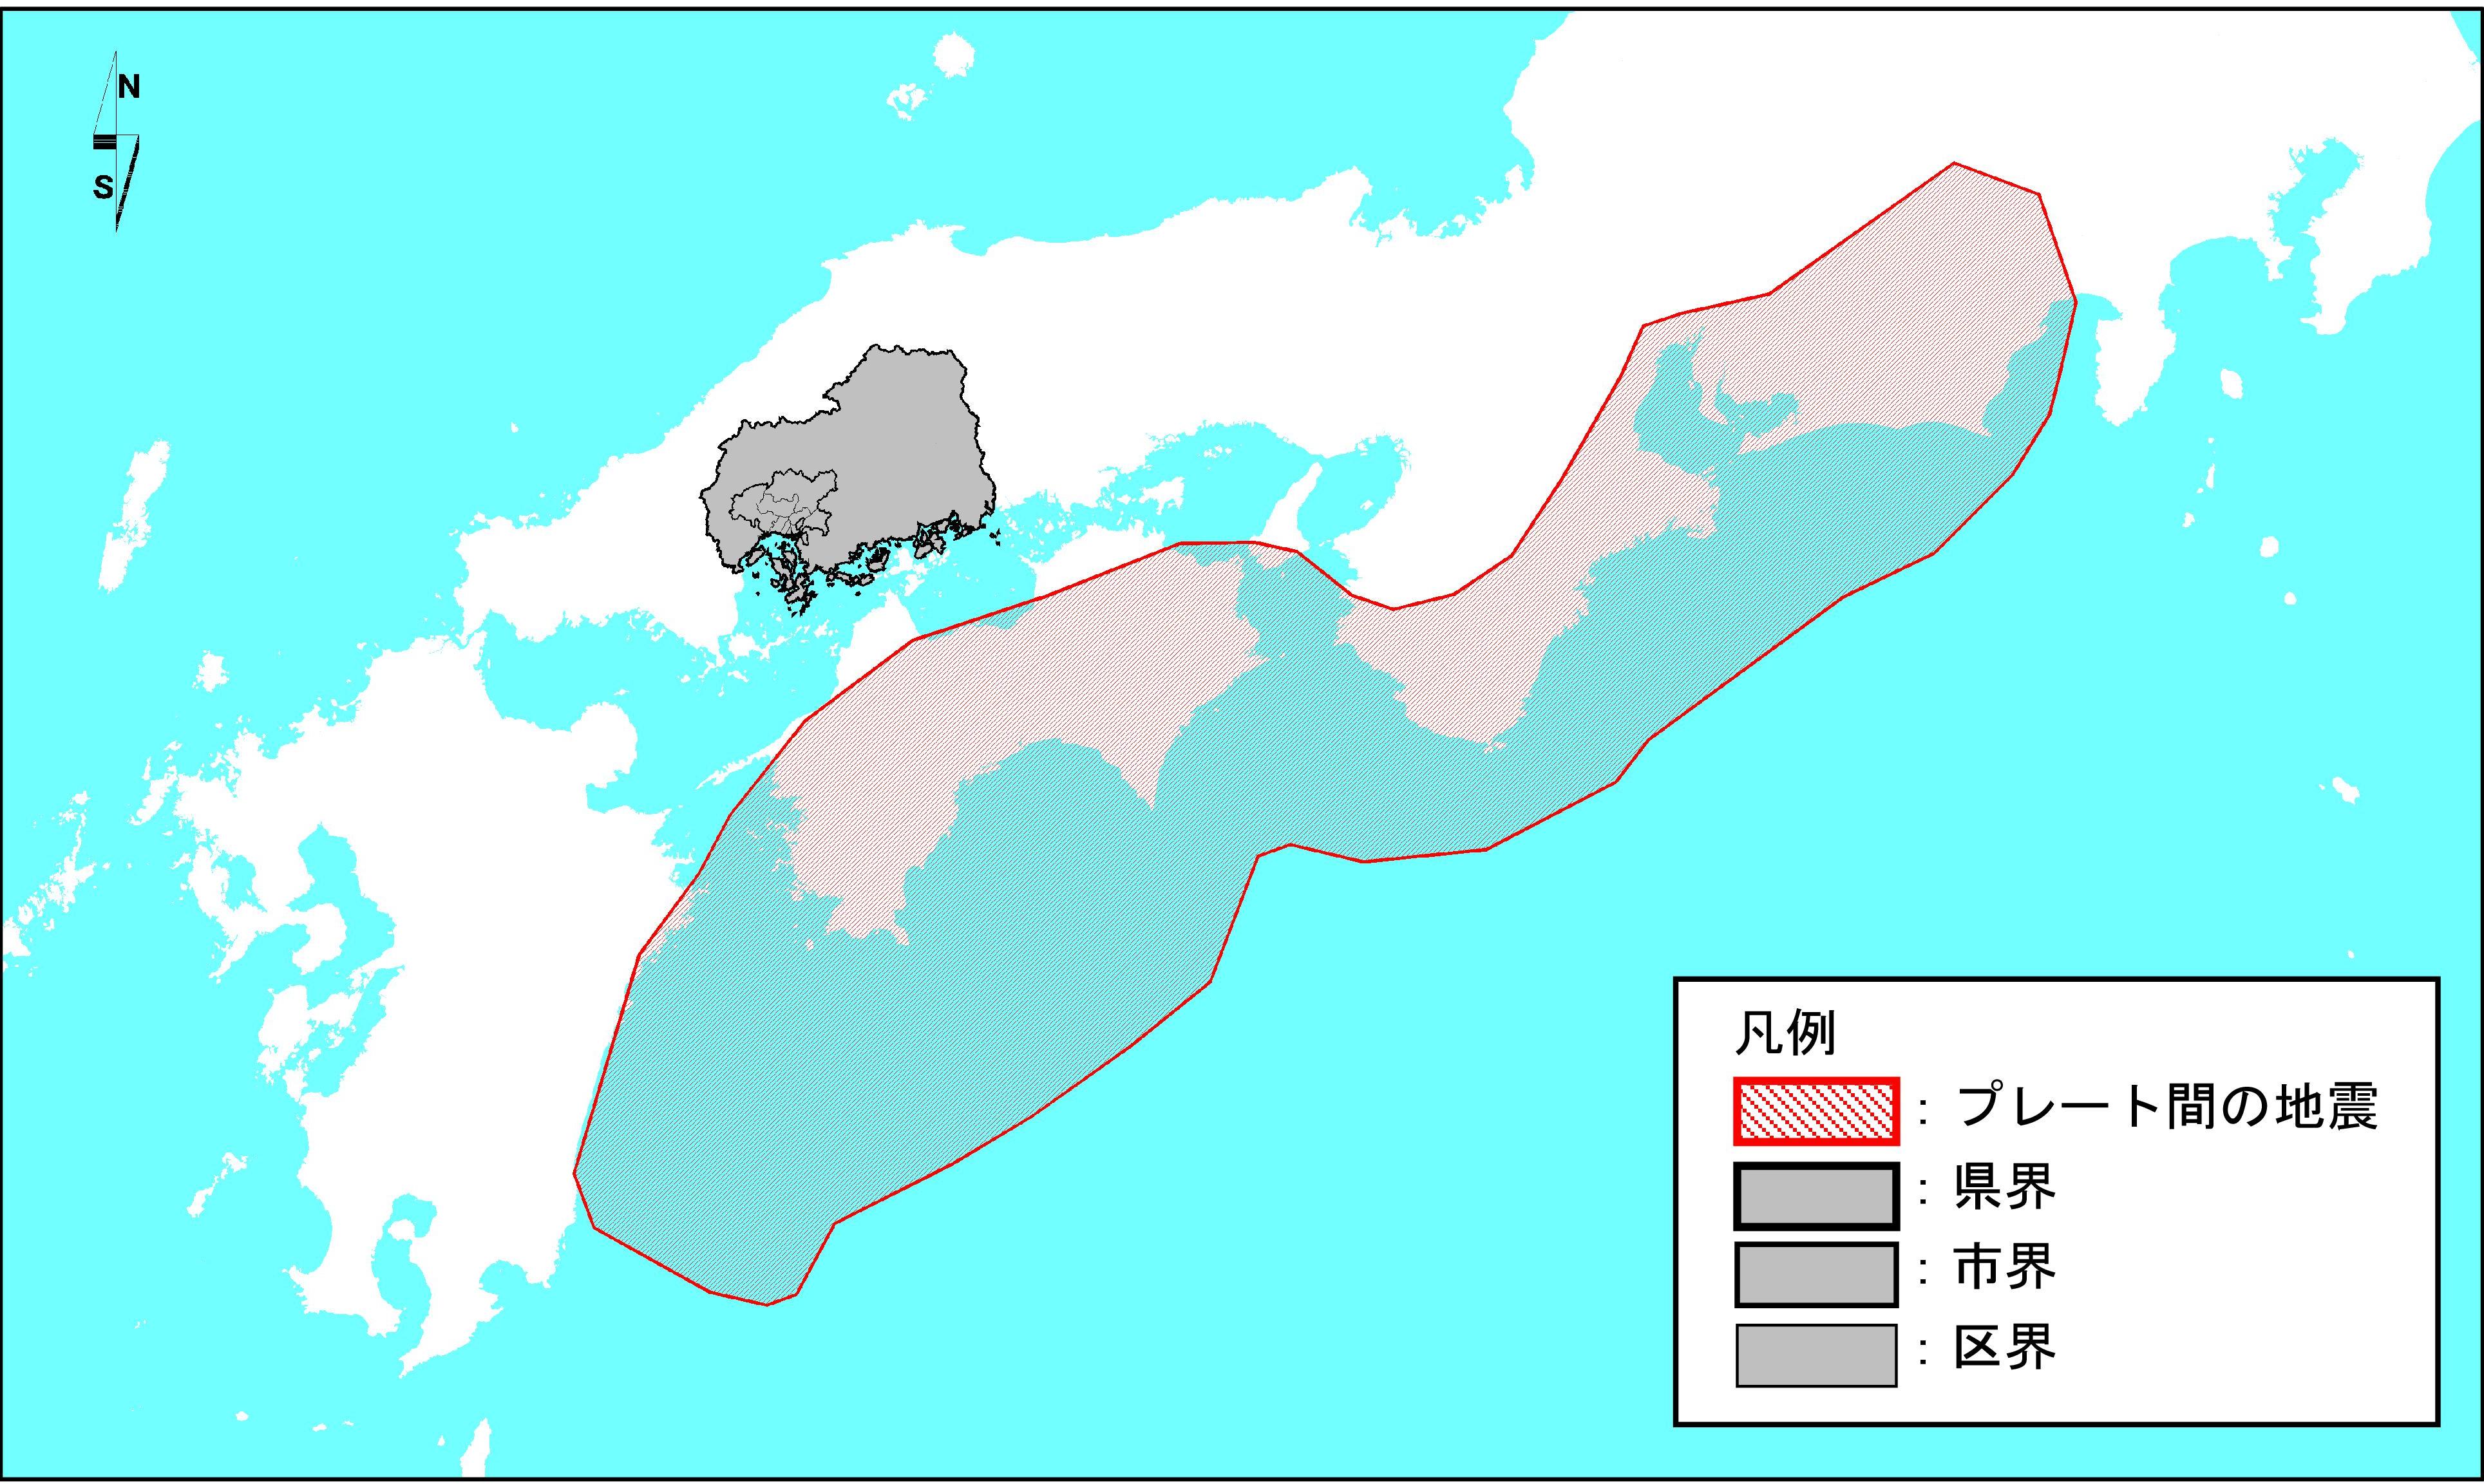 想定地震位置図1(南海トラフ巨大地震)